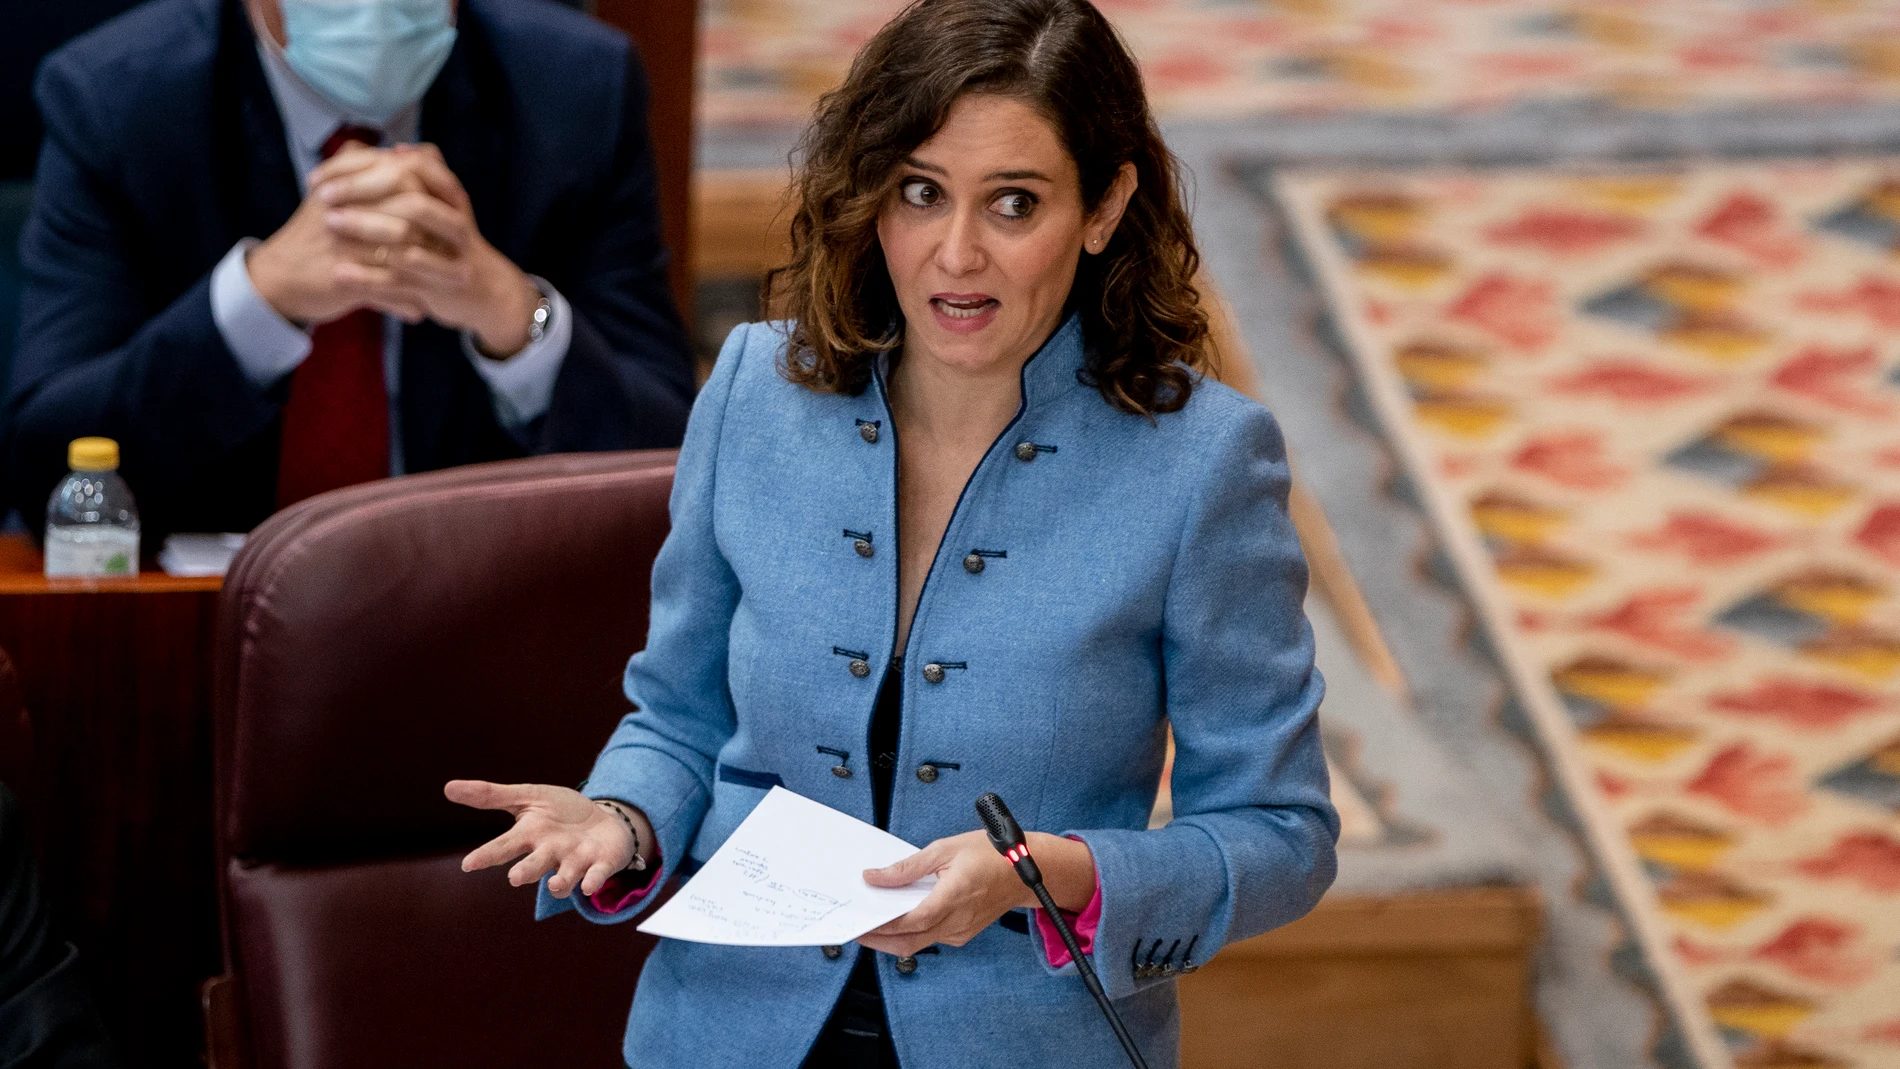 La presidenta de la Comunidad de Madrid, Isabel Díaz Ayuso, durante una sesión de control al Gobierno regional en la Asamblea